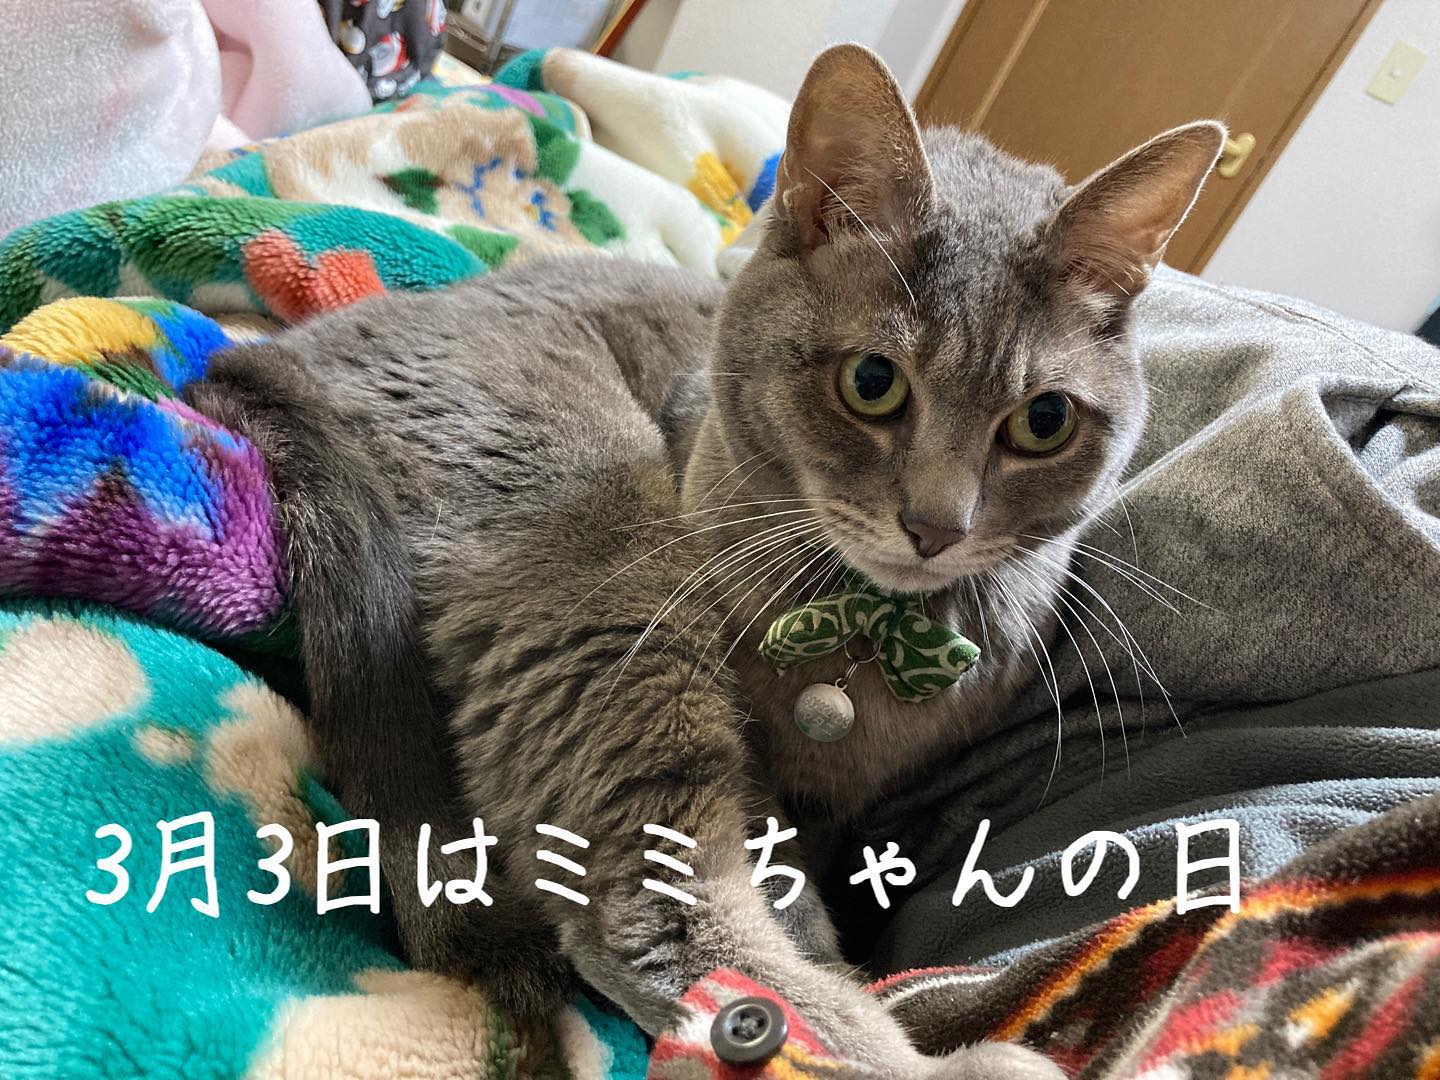 3月3日は、ミミちゃんの日ฅ(^^ฅ)今年の4/20で、7歳になります。これからも元気でいてね。 #猫好きさんと繋がりたい  #猫のいる暮らし #ミミちゃんの日 #3月3日